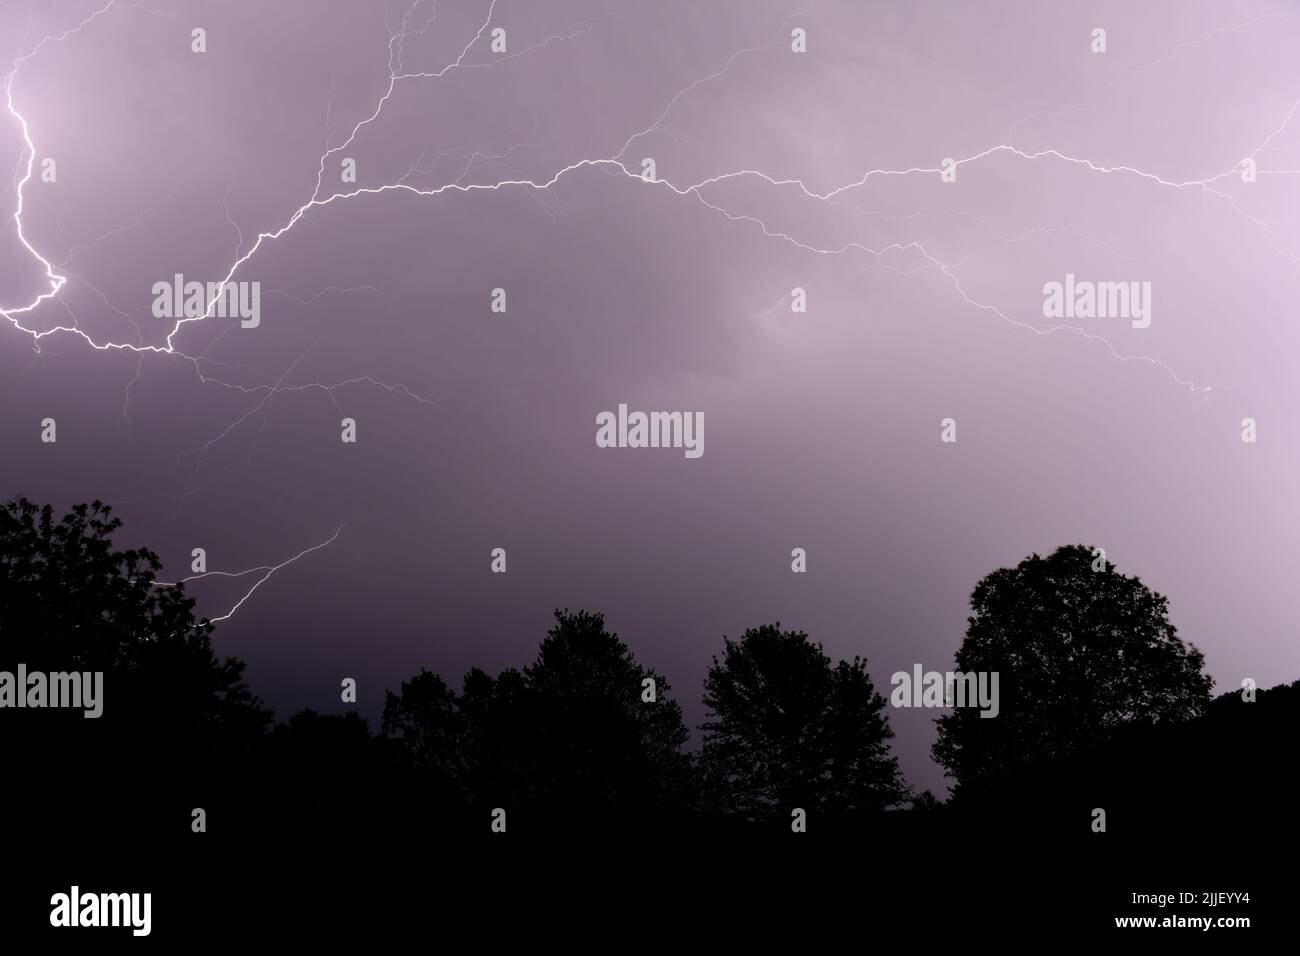 Early summer lightning storm breaks across the sky in Arkansas Stock Photo